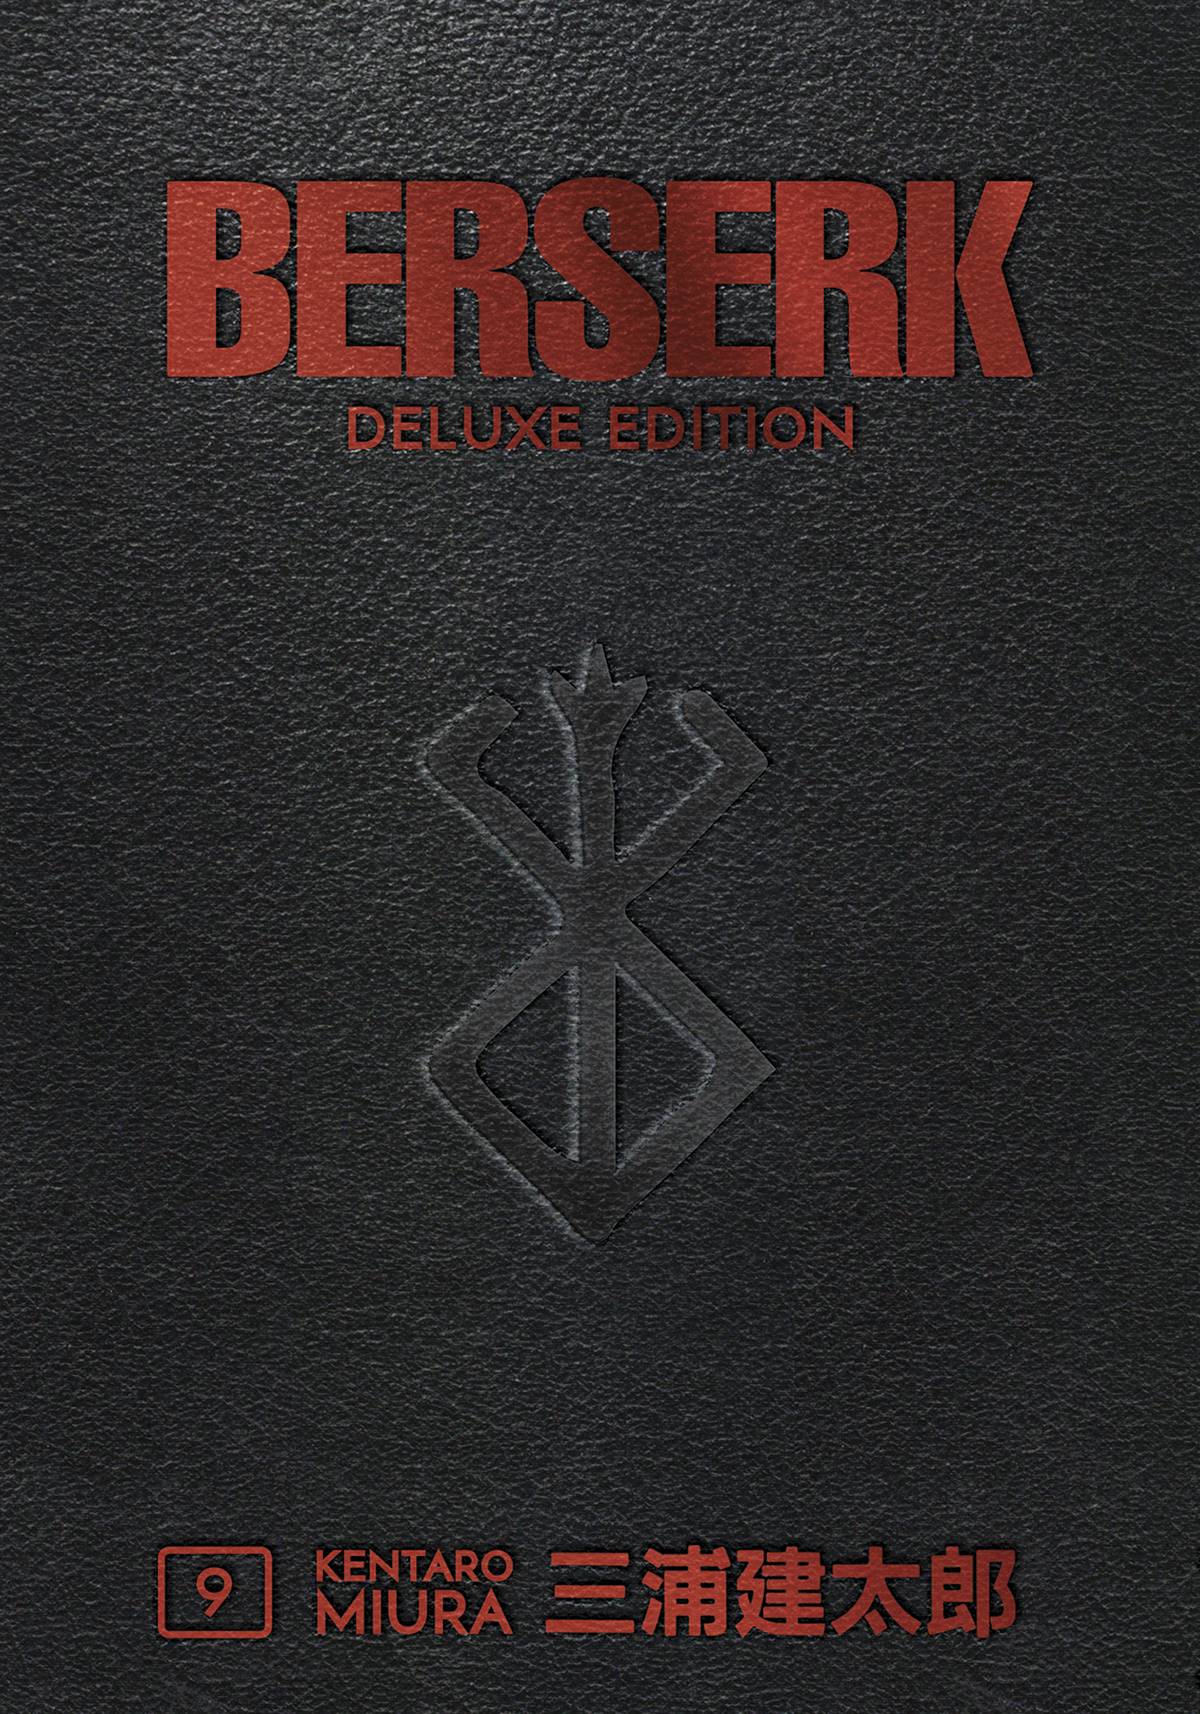 Berserk Deluxe Edition Hardcover Vol 9